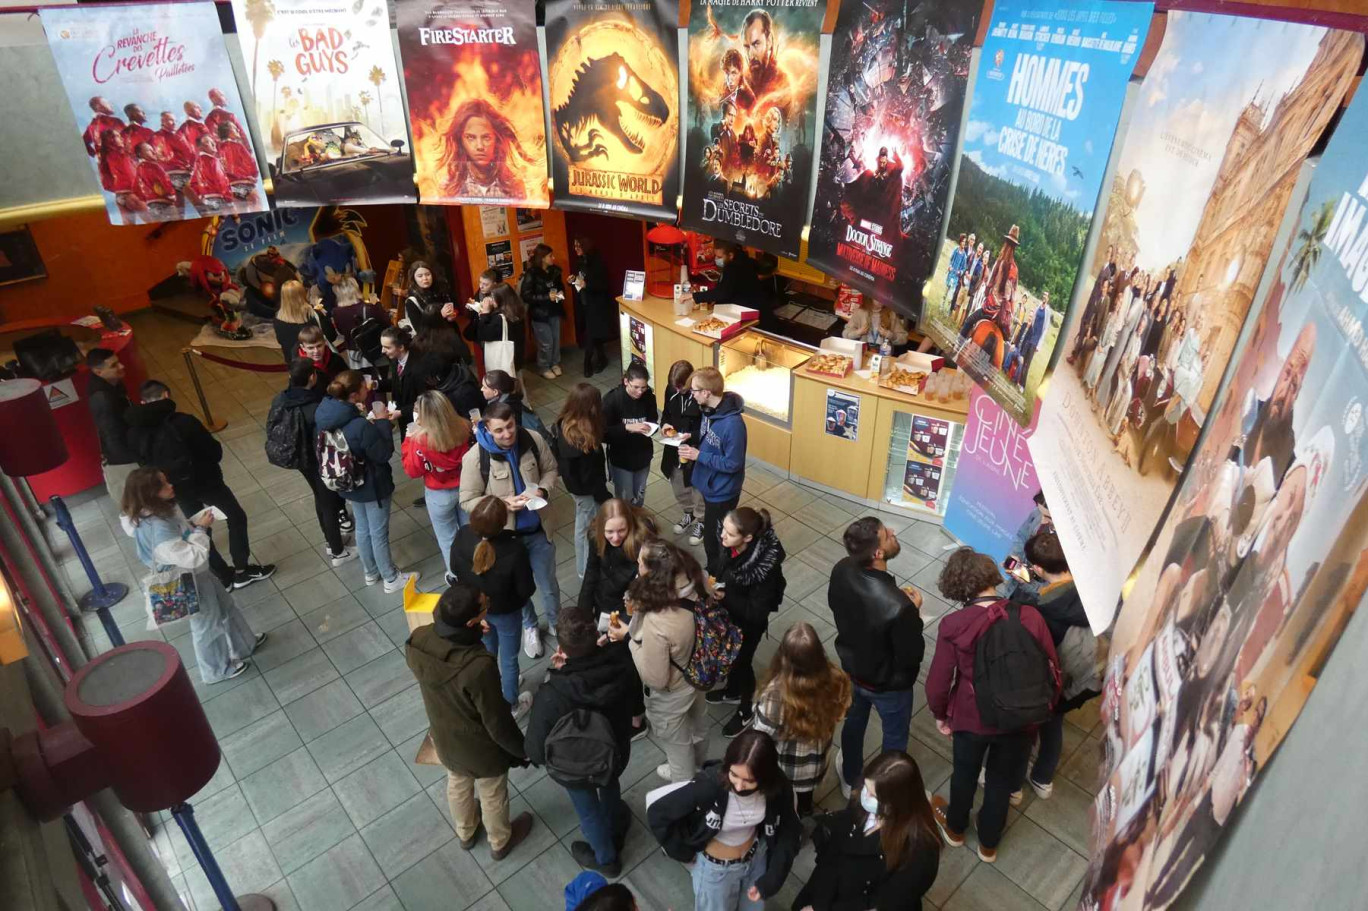 La soirée d'ouverture du festival Ciné-Jeune de l'Aisne aura lieu au CinéLaon le vendredi 22 mars à 18h30 avec la projection du film Wall-E, produit par le studio Pixar (c) Ciné-Jeune.